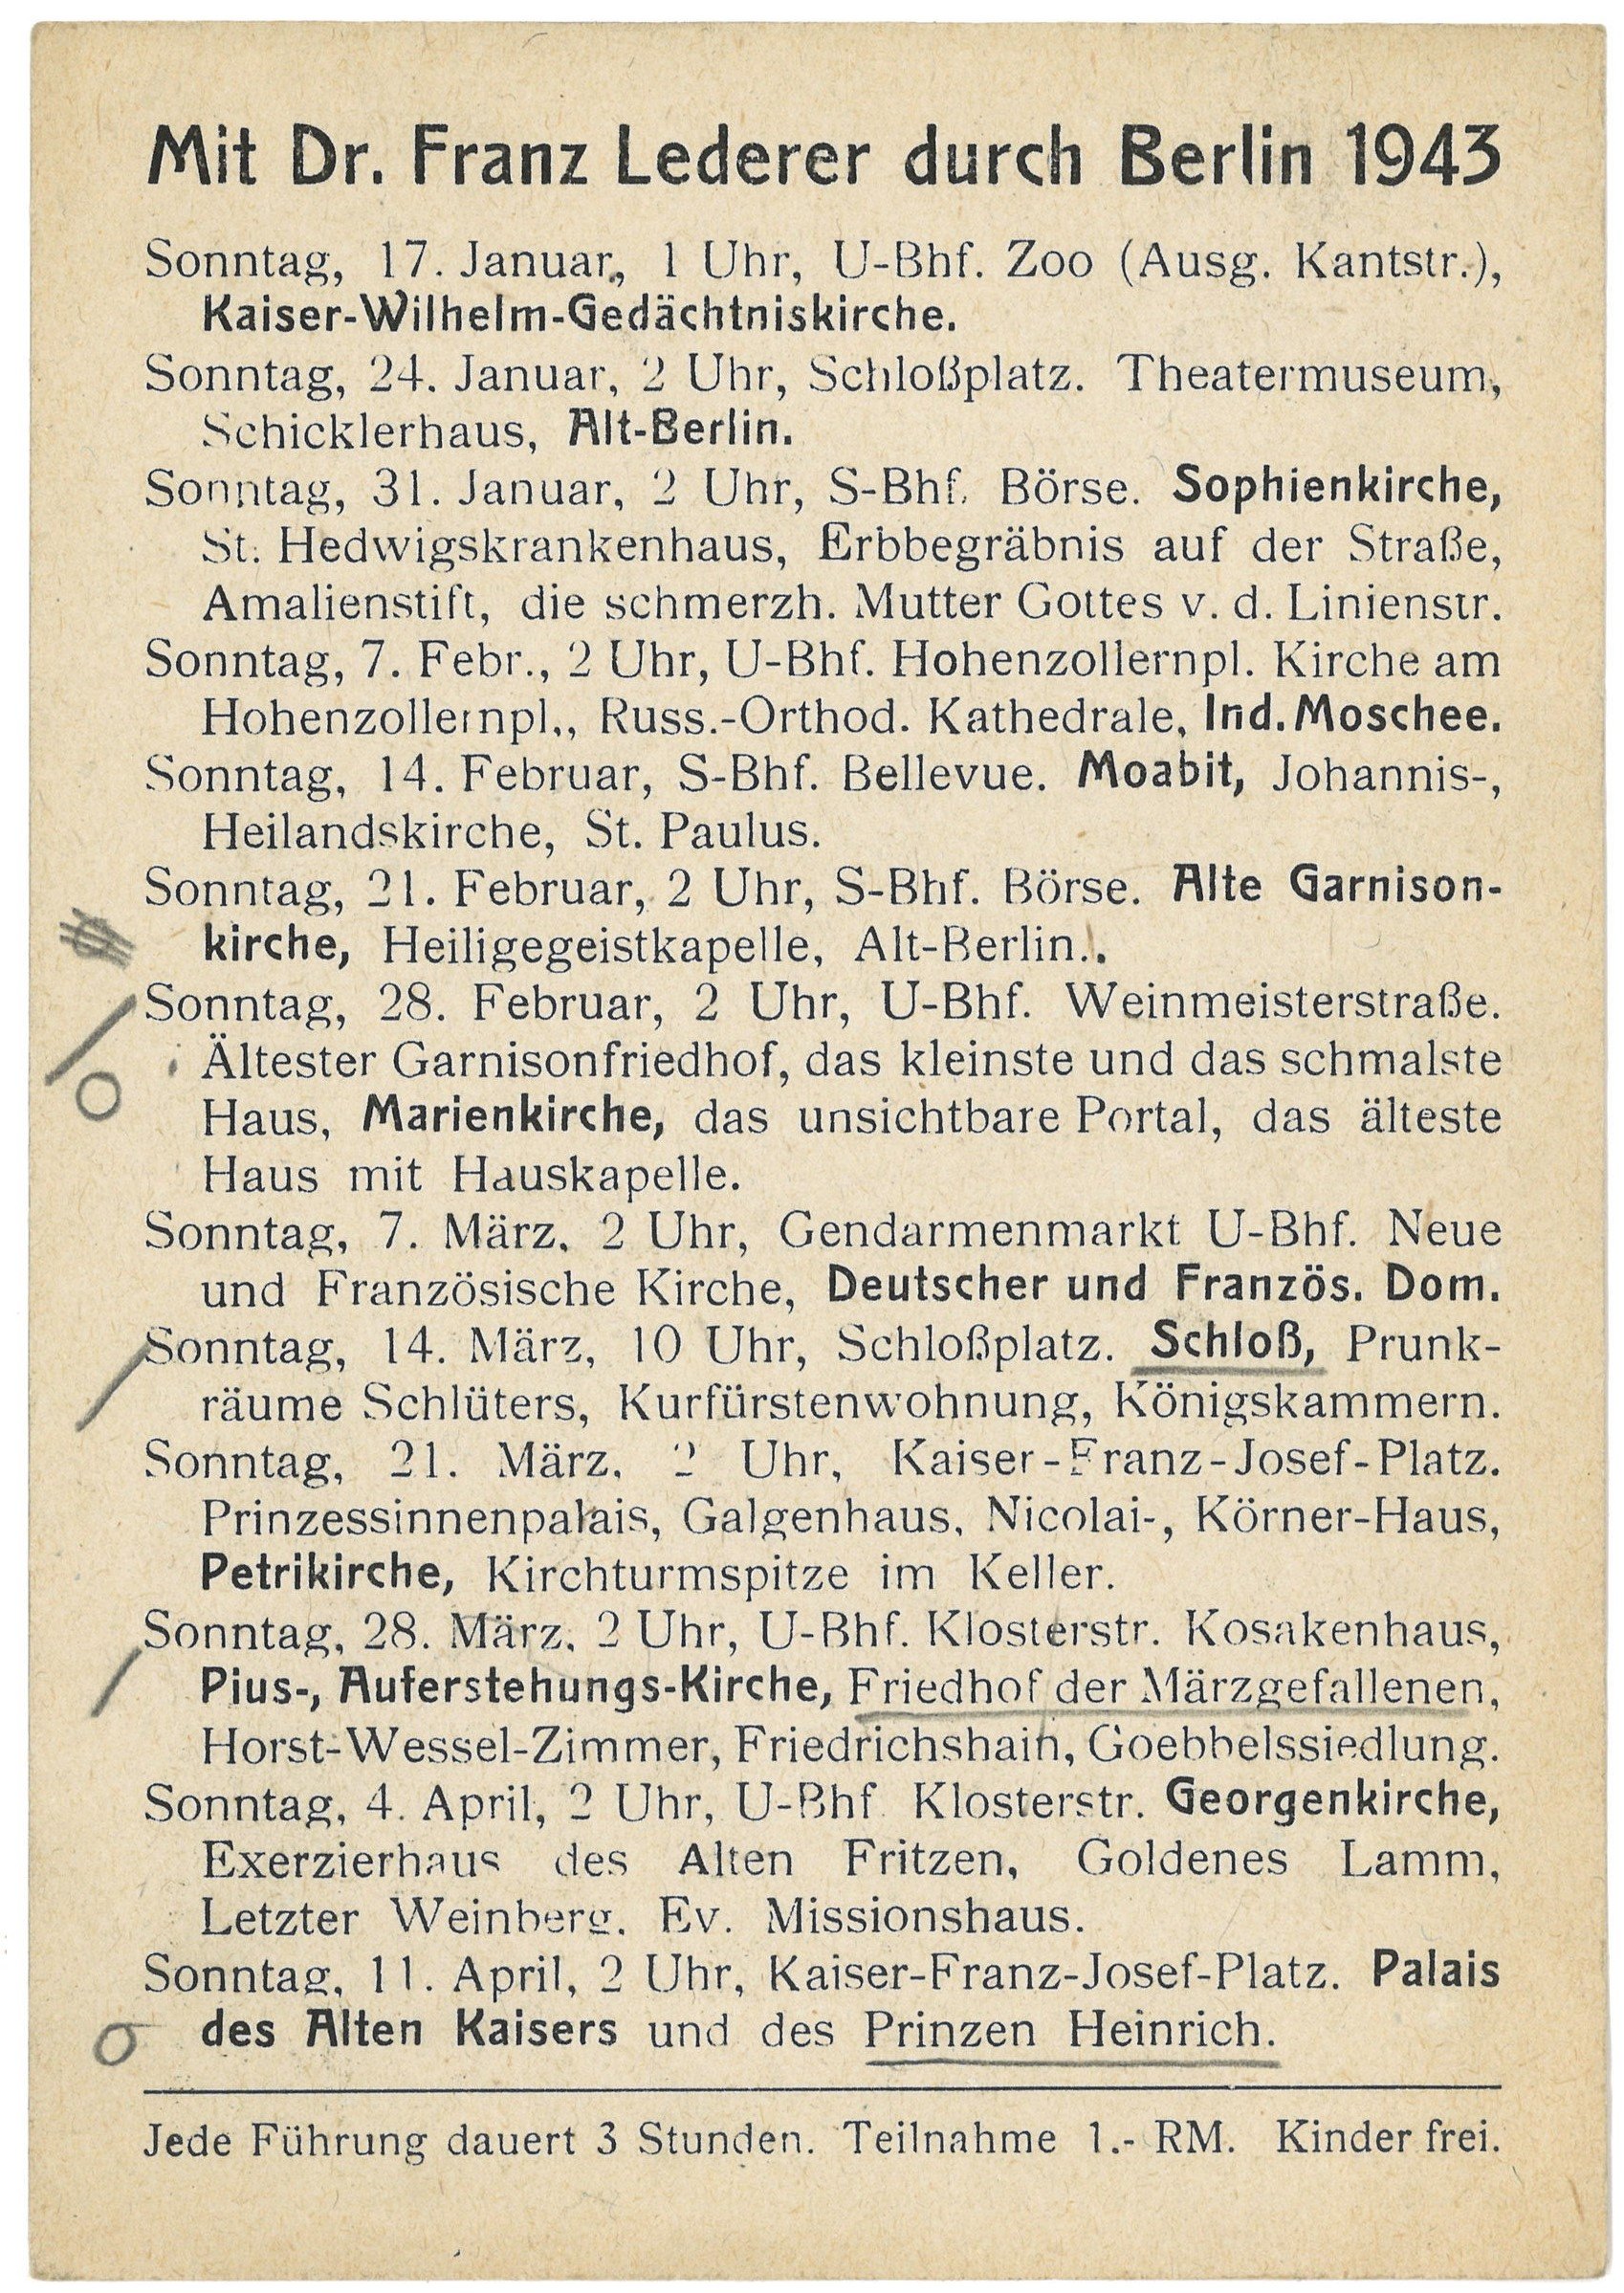 Programm der Berlin-Führungen von Dr. Franz Lederer für Januar bis April 1943 (Landesgeschichtliche Vereinigung für die Mark Brandenburg e.V., Archiv CC BY)